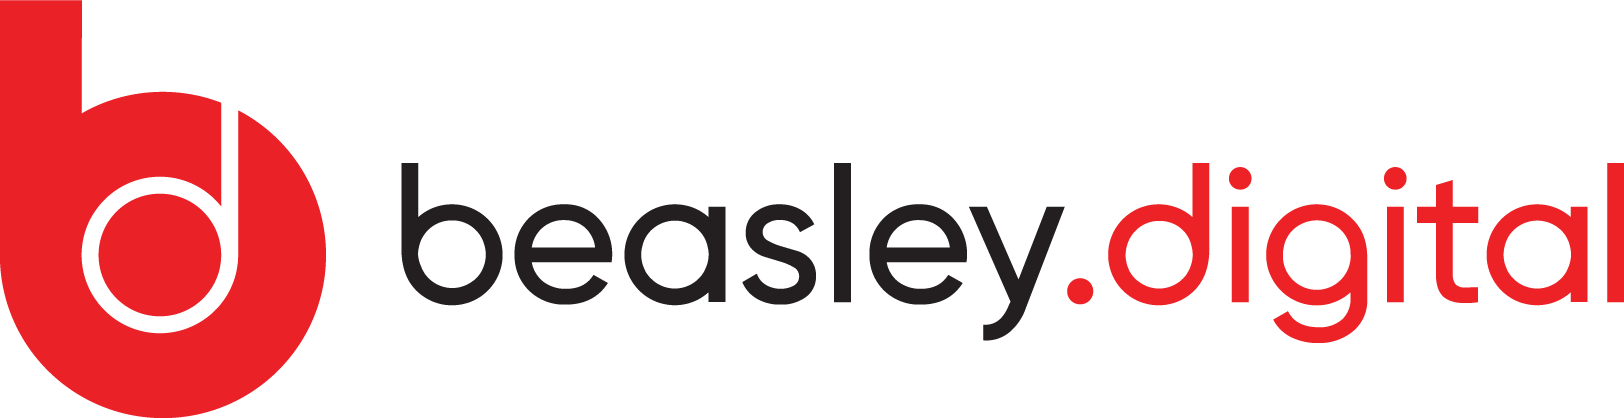 Beasley Digital